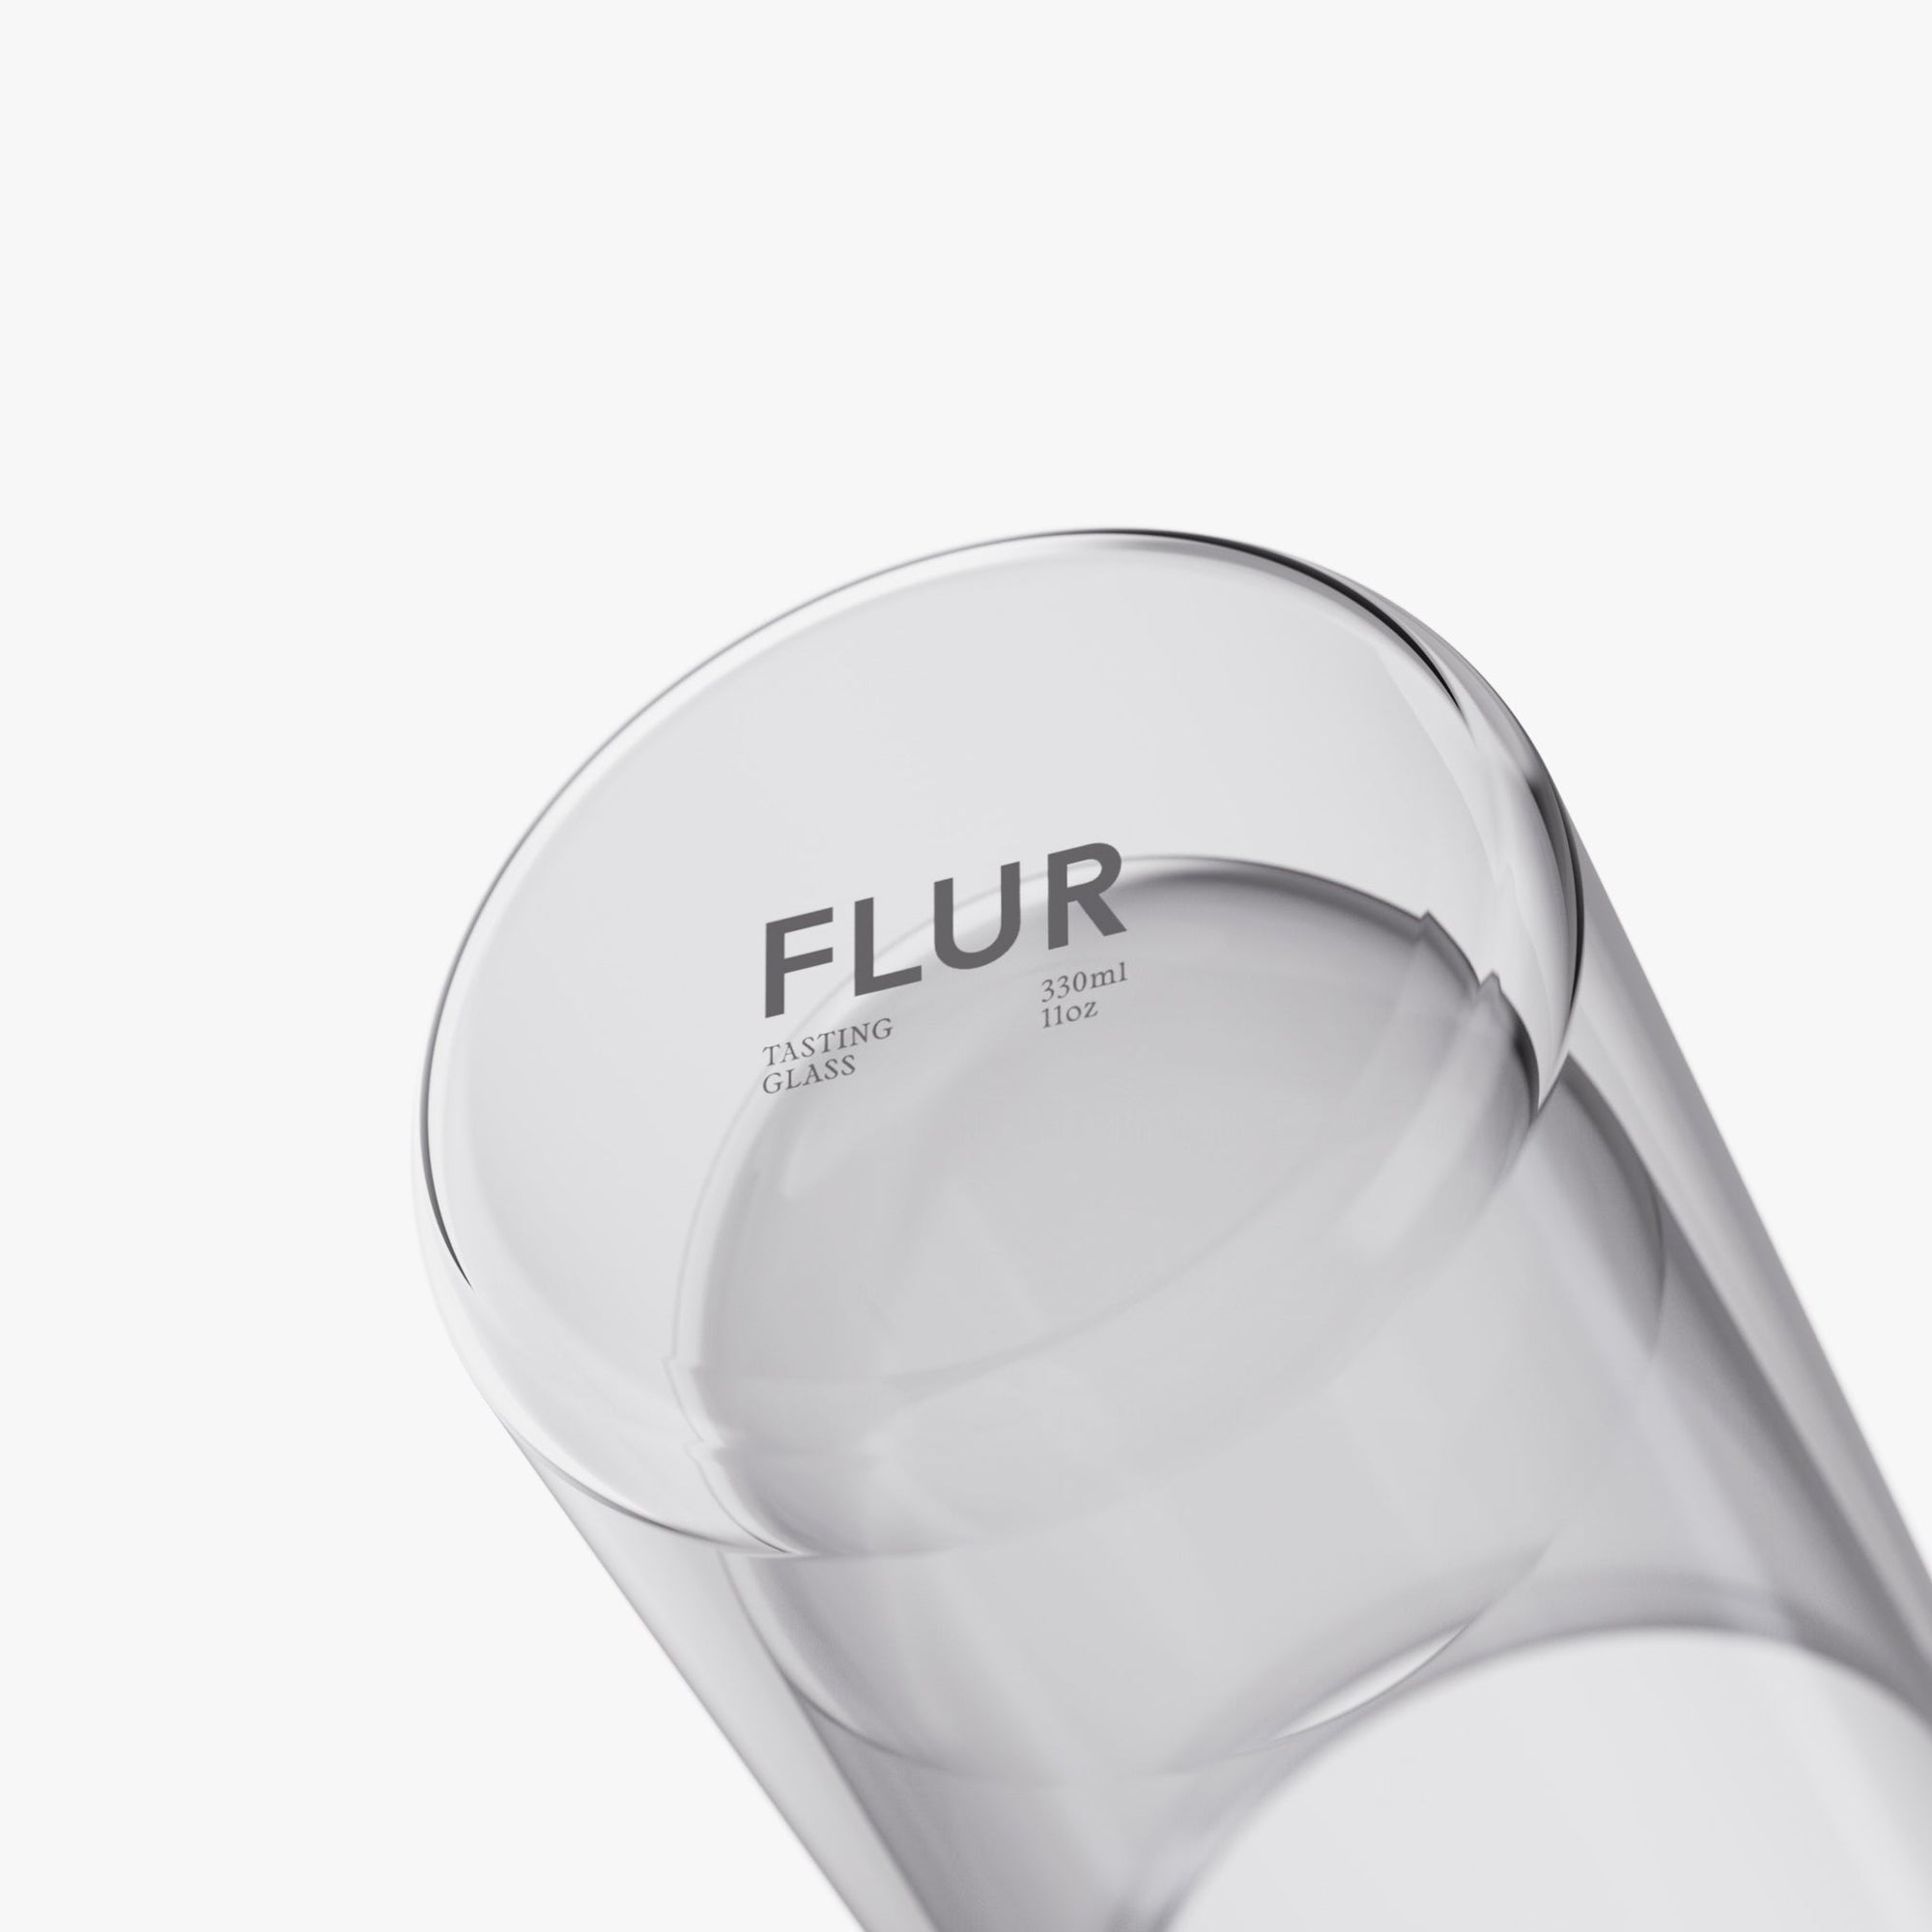 FLUR Tasting Glass